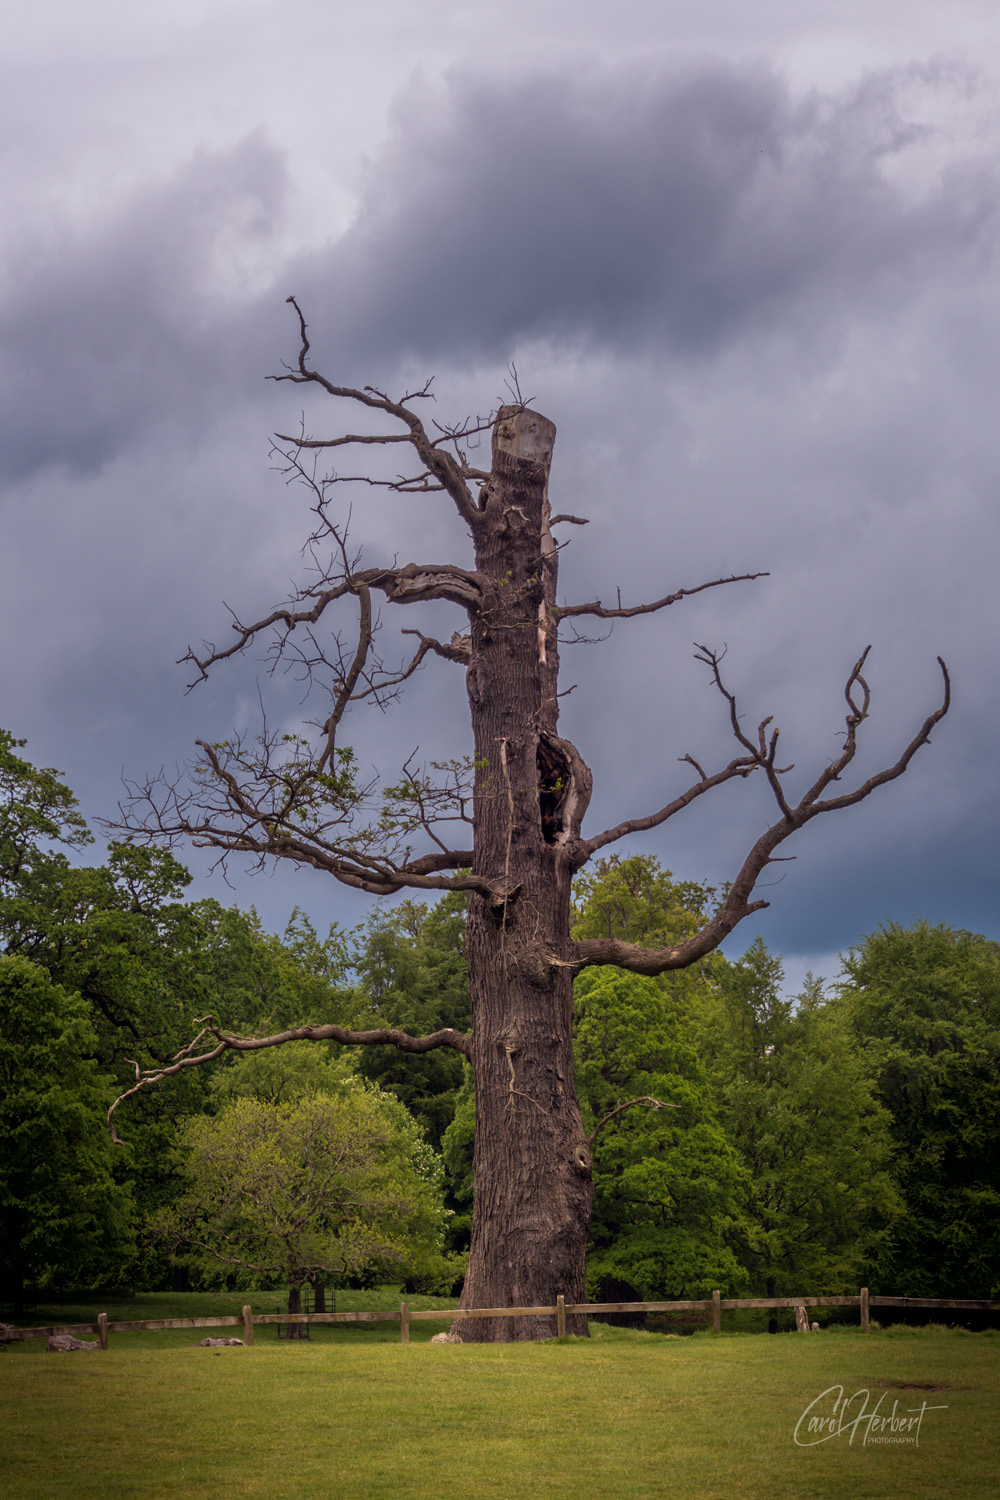 An old oak tree stump